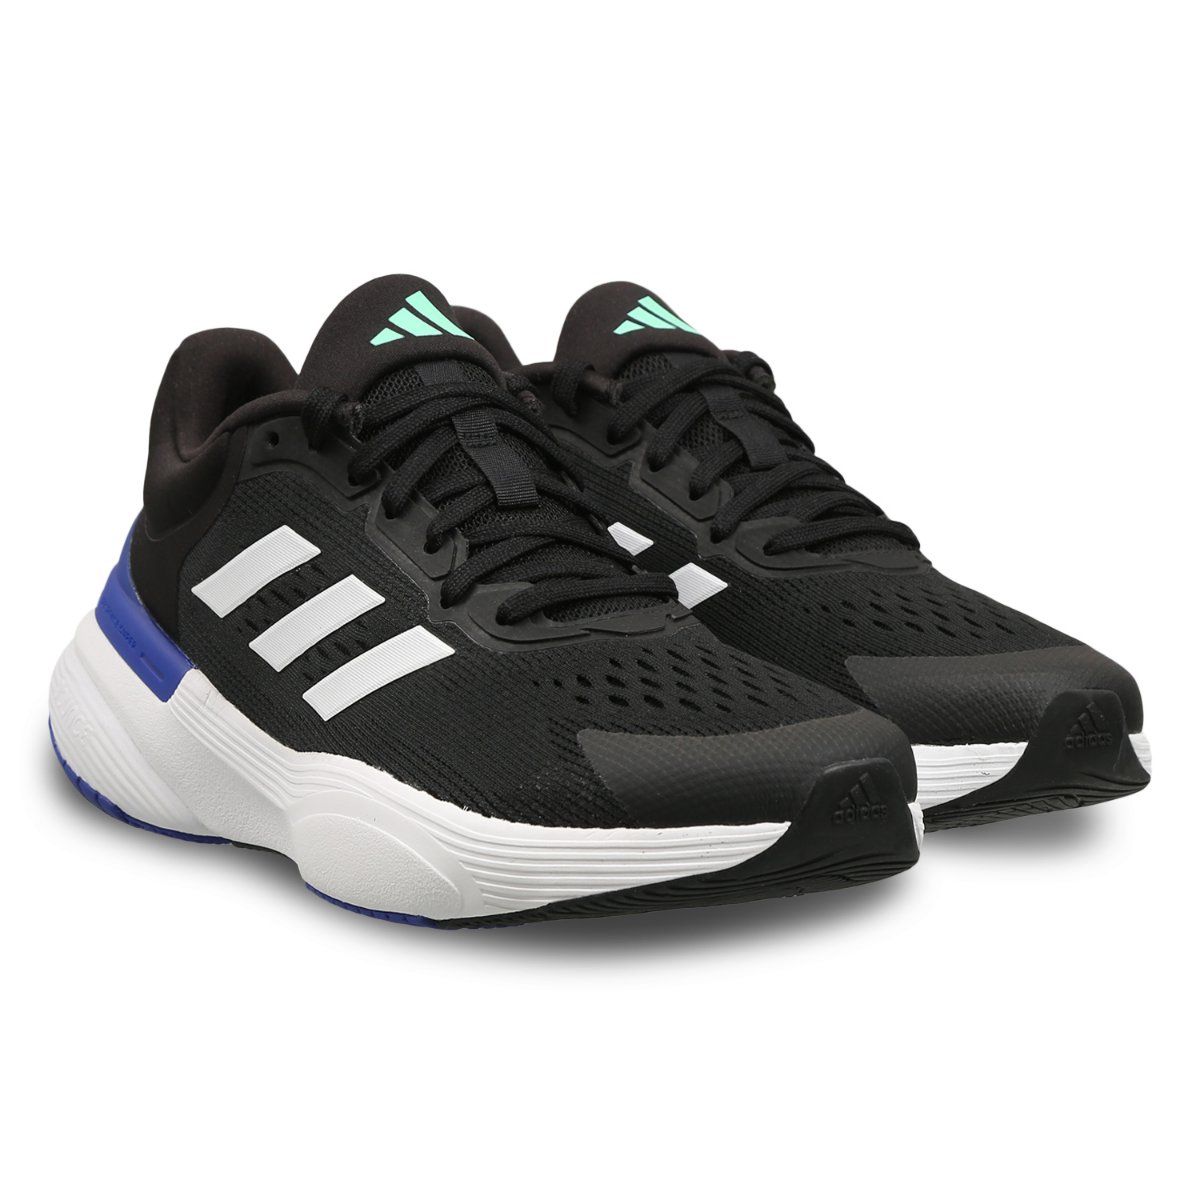 Buy Adidas Men's Mesh Cblack/Cblack/Hazsky Response Sr 5.0 Boost Running  Shoes - 9 UK at Amazon.in